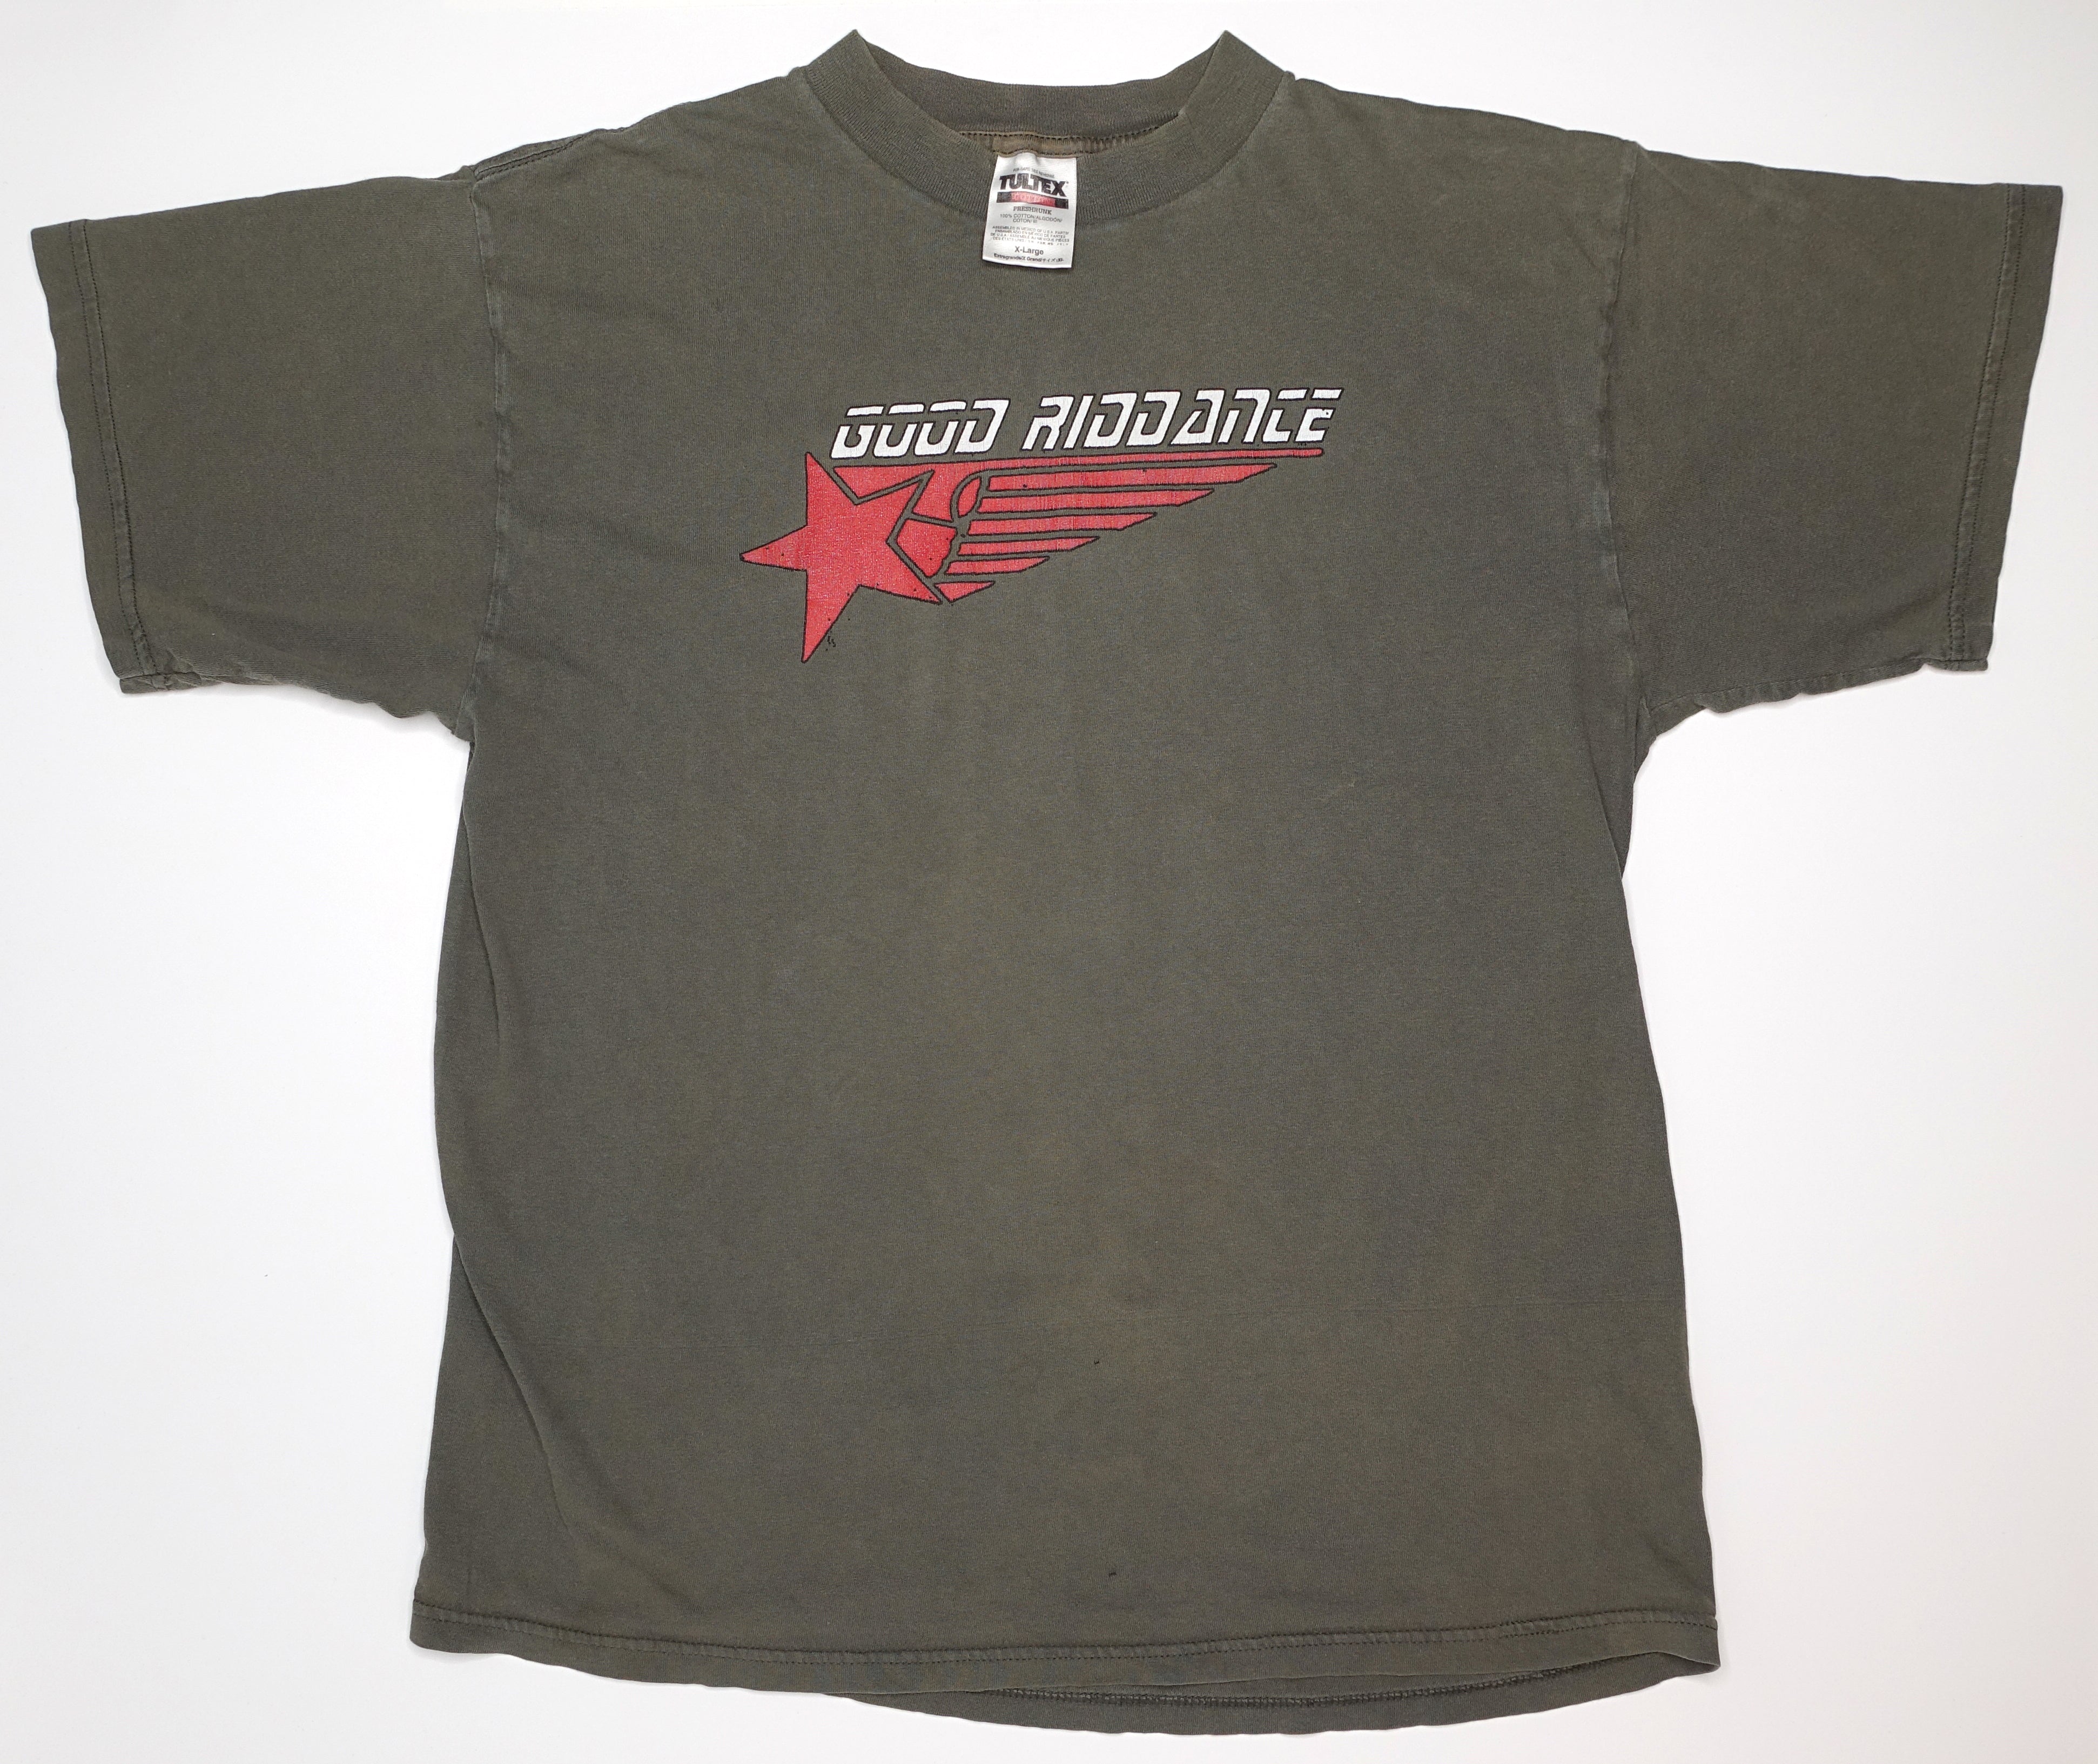 Good Riddance - Team #1 90's Tour Shirt Size XL